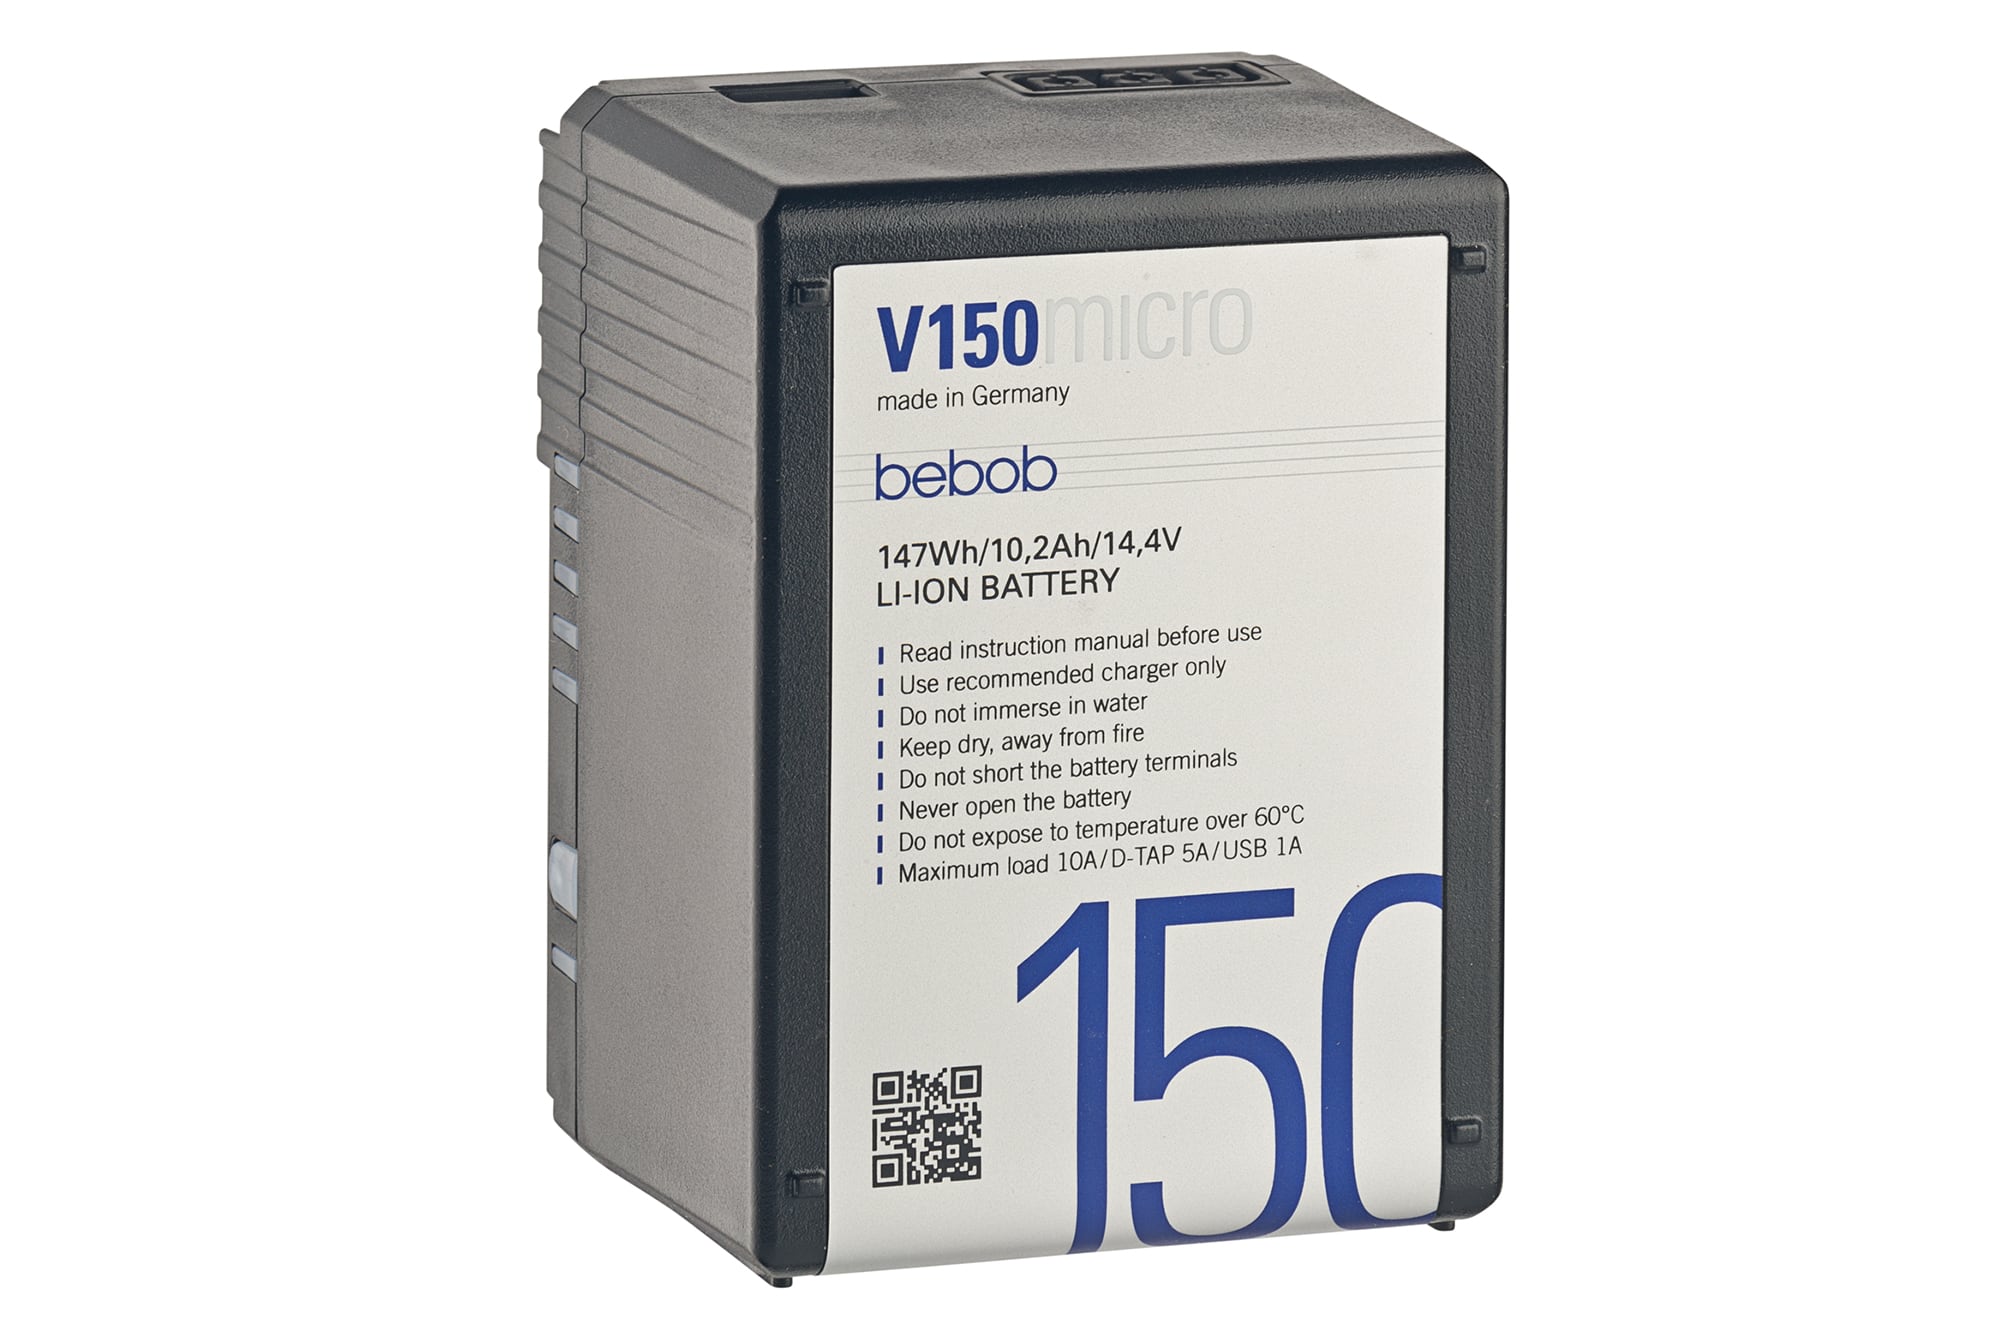 Bebob V 150 Micro